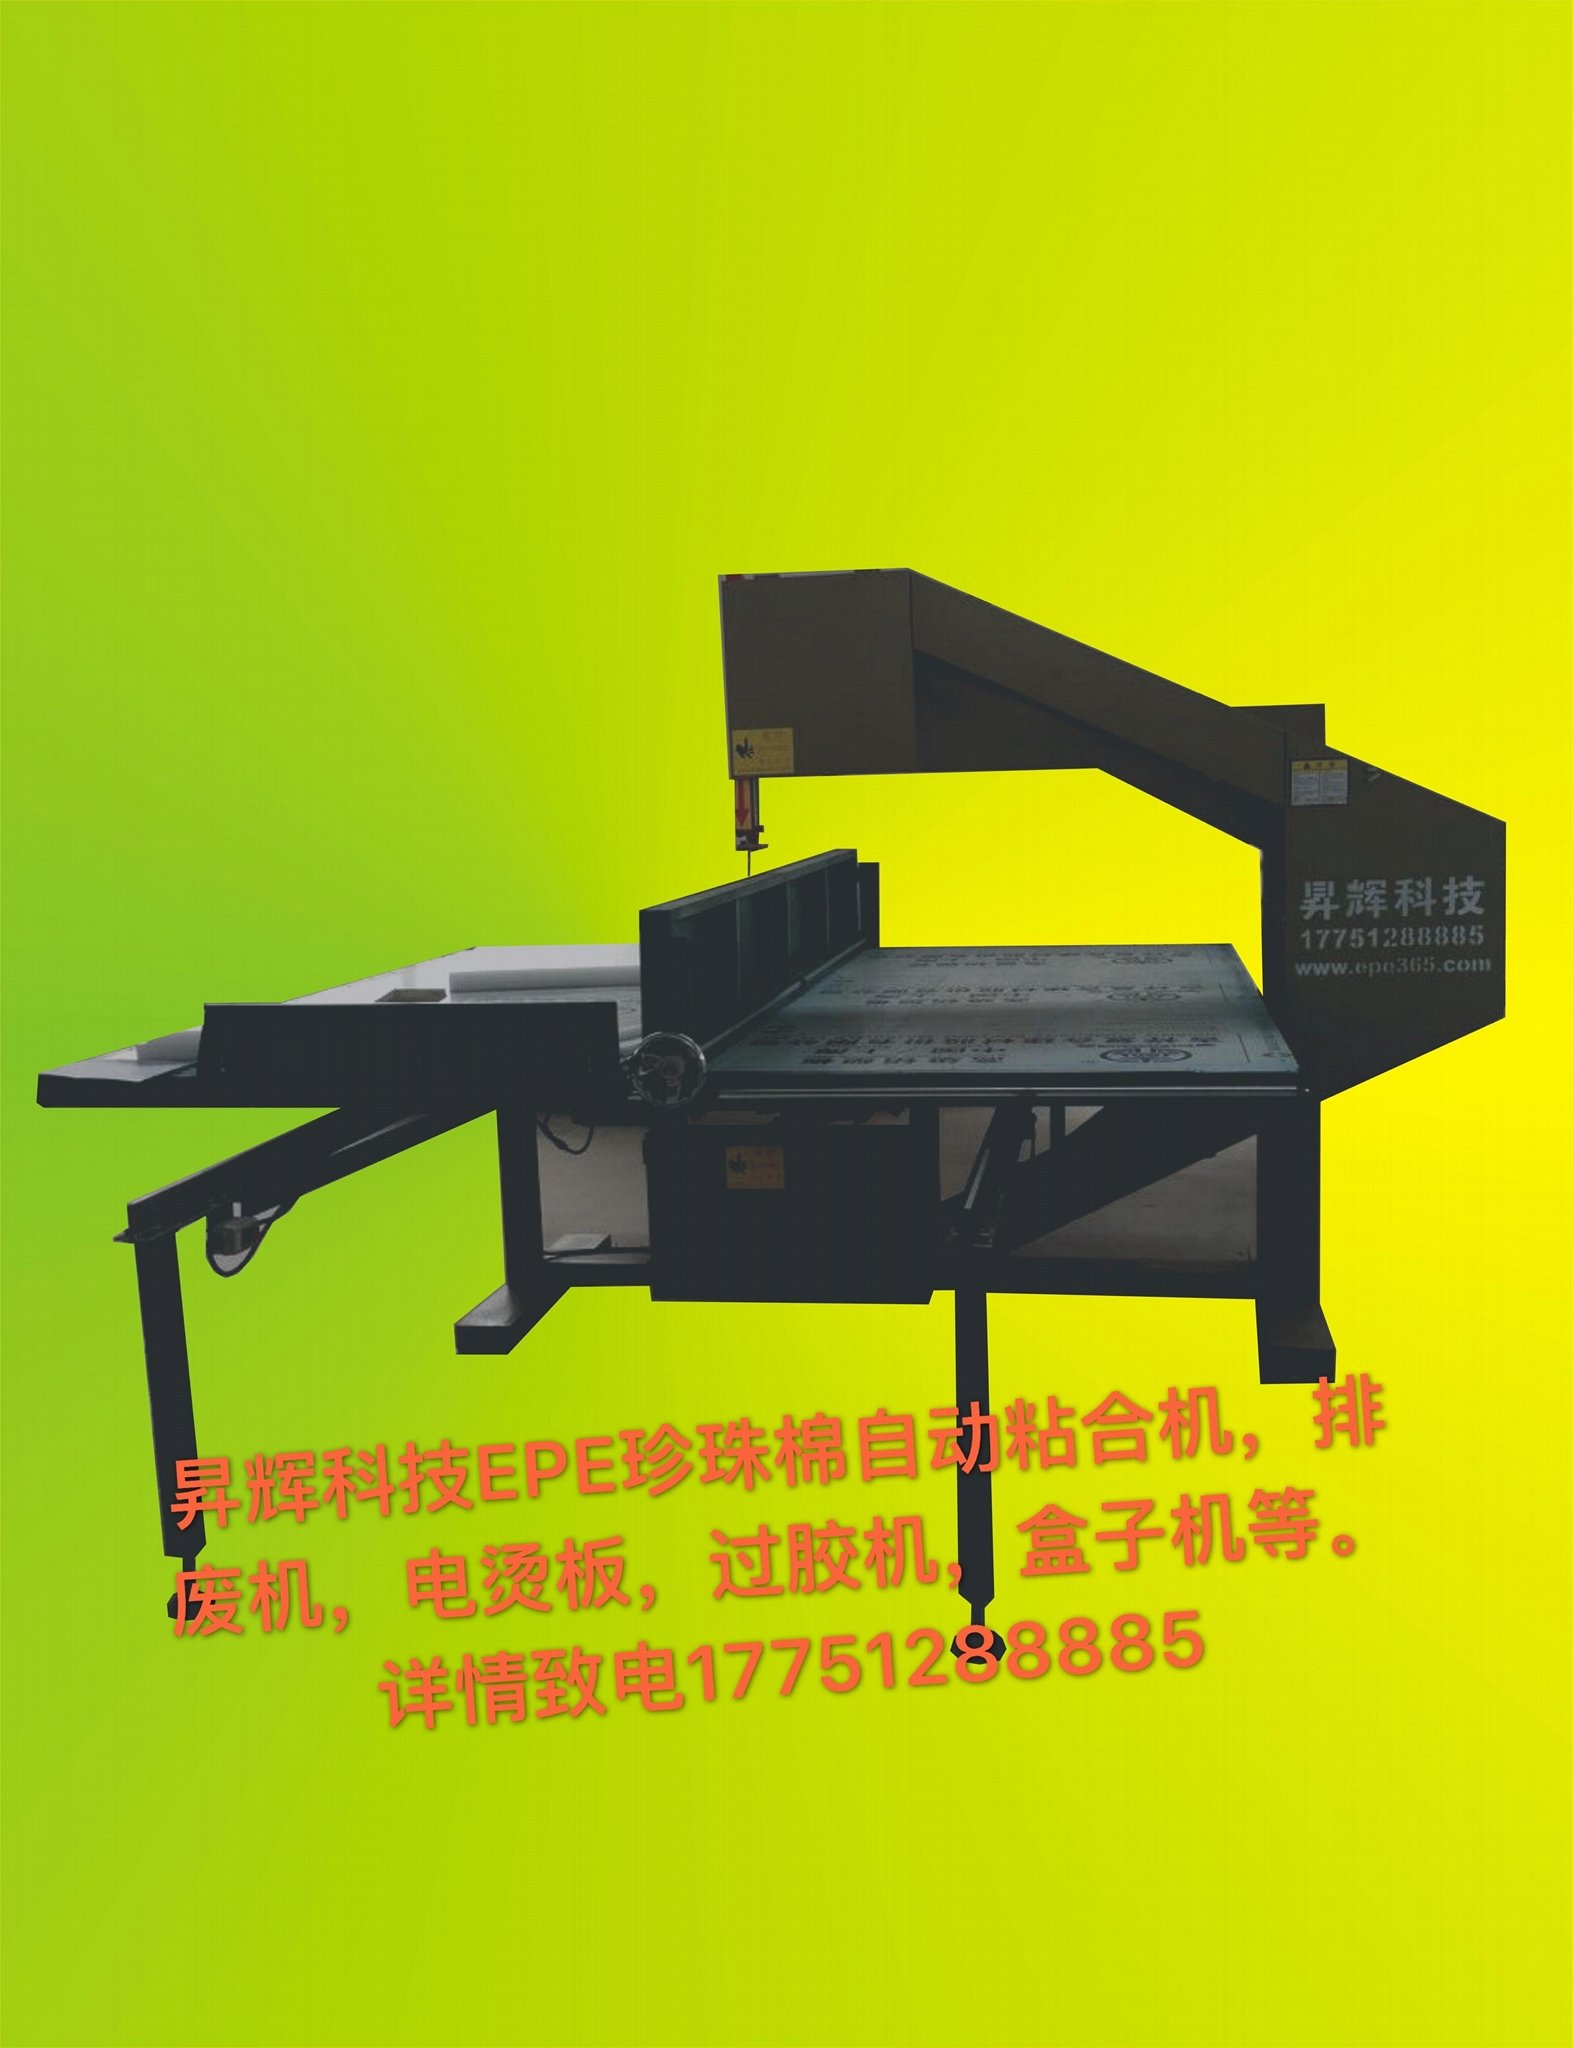 上海厂家直销珍珠棉EPE双工位自动粘合机